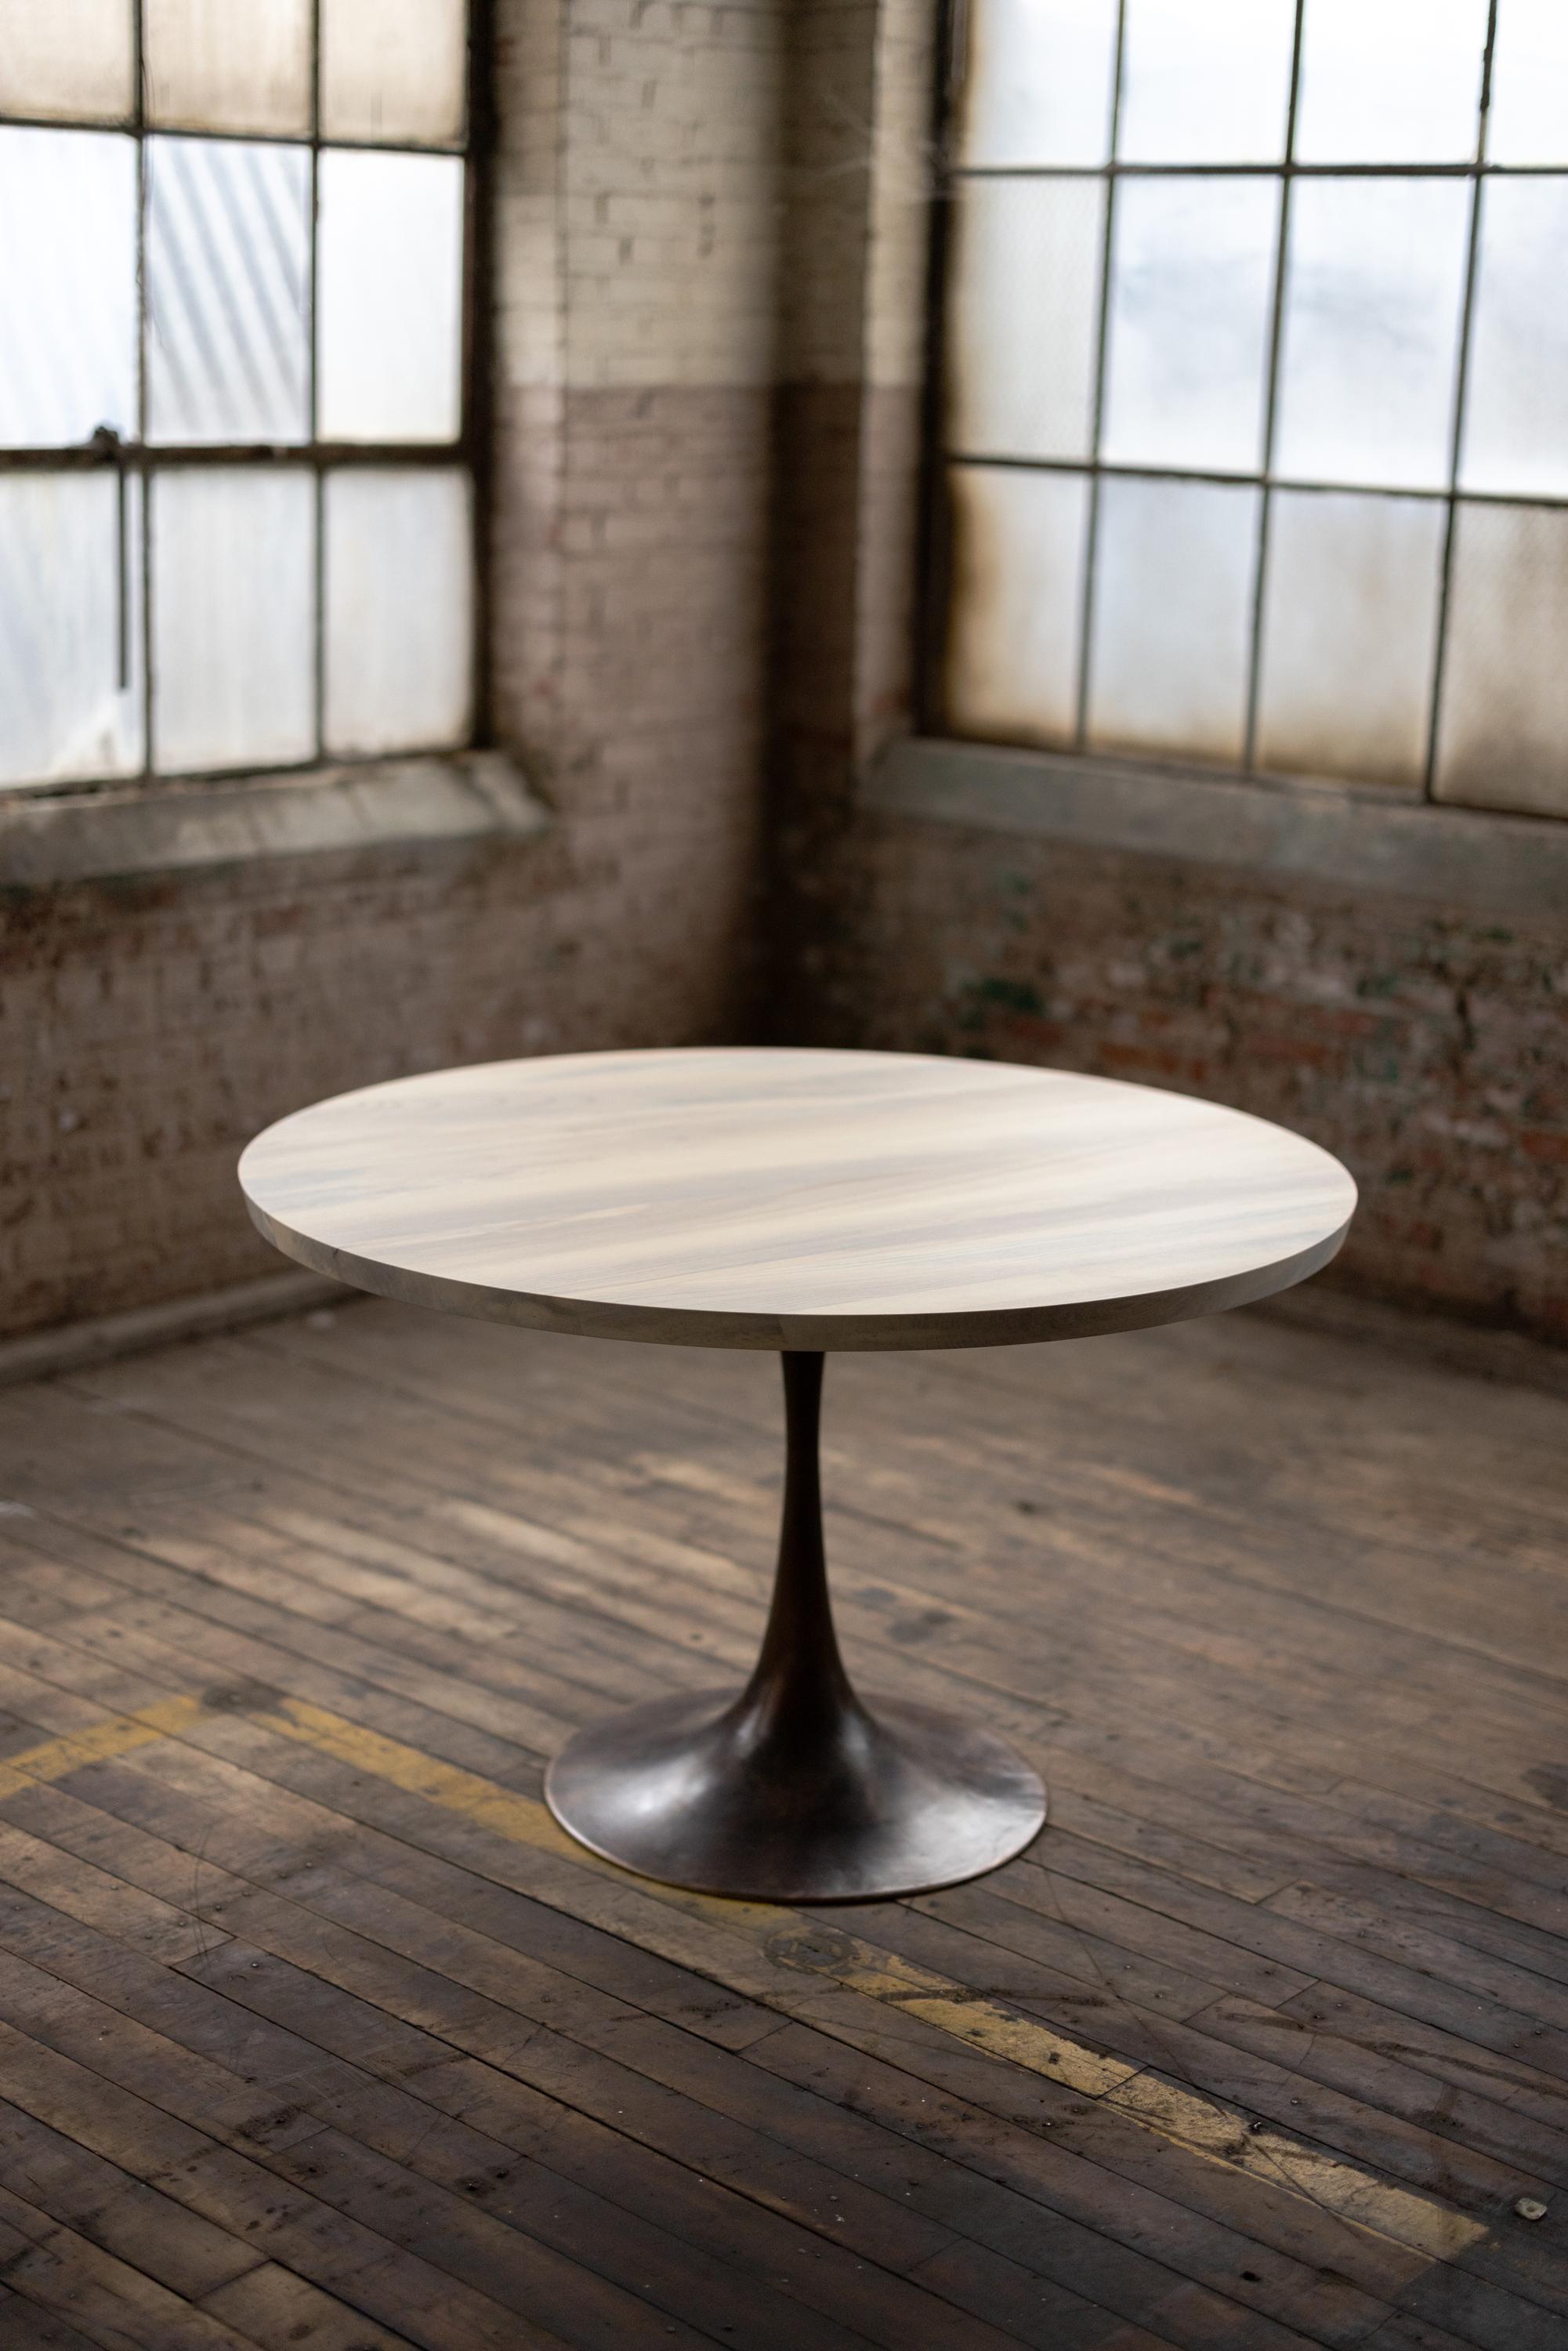 Der Sockel Amicalola erobert den Raum mit einer runden oder ovalen Tischplatte. Dieser Sockel wird von Kunsthandwerkern in Birmingham, Alabama, von Hand gegossen, um schön auszusehen und den Füßen der Gäste aus dem Weg zu gehen. Der Name ist von der